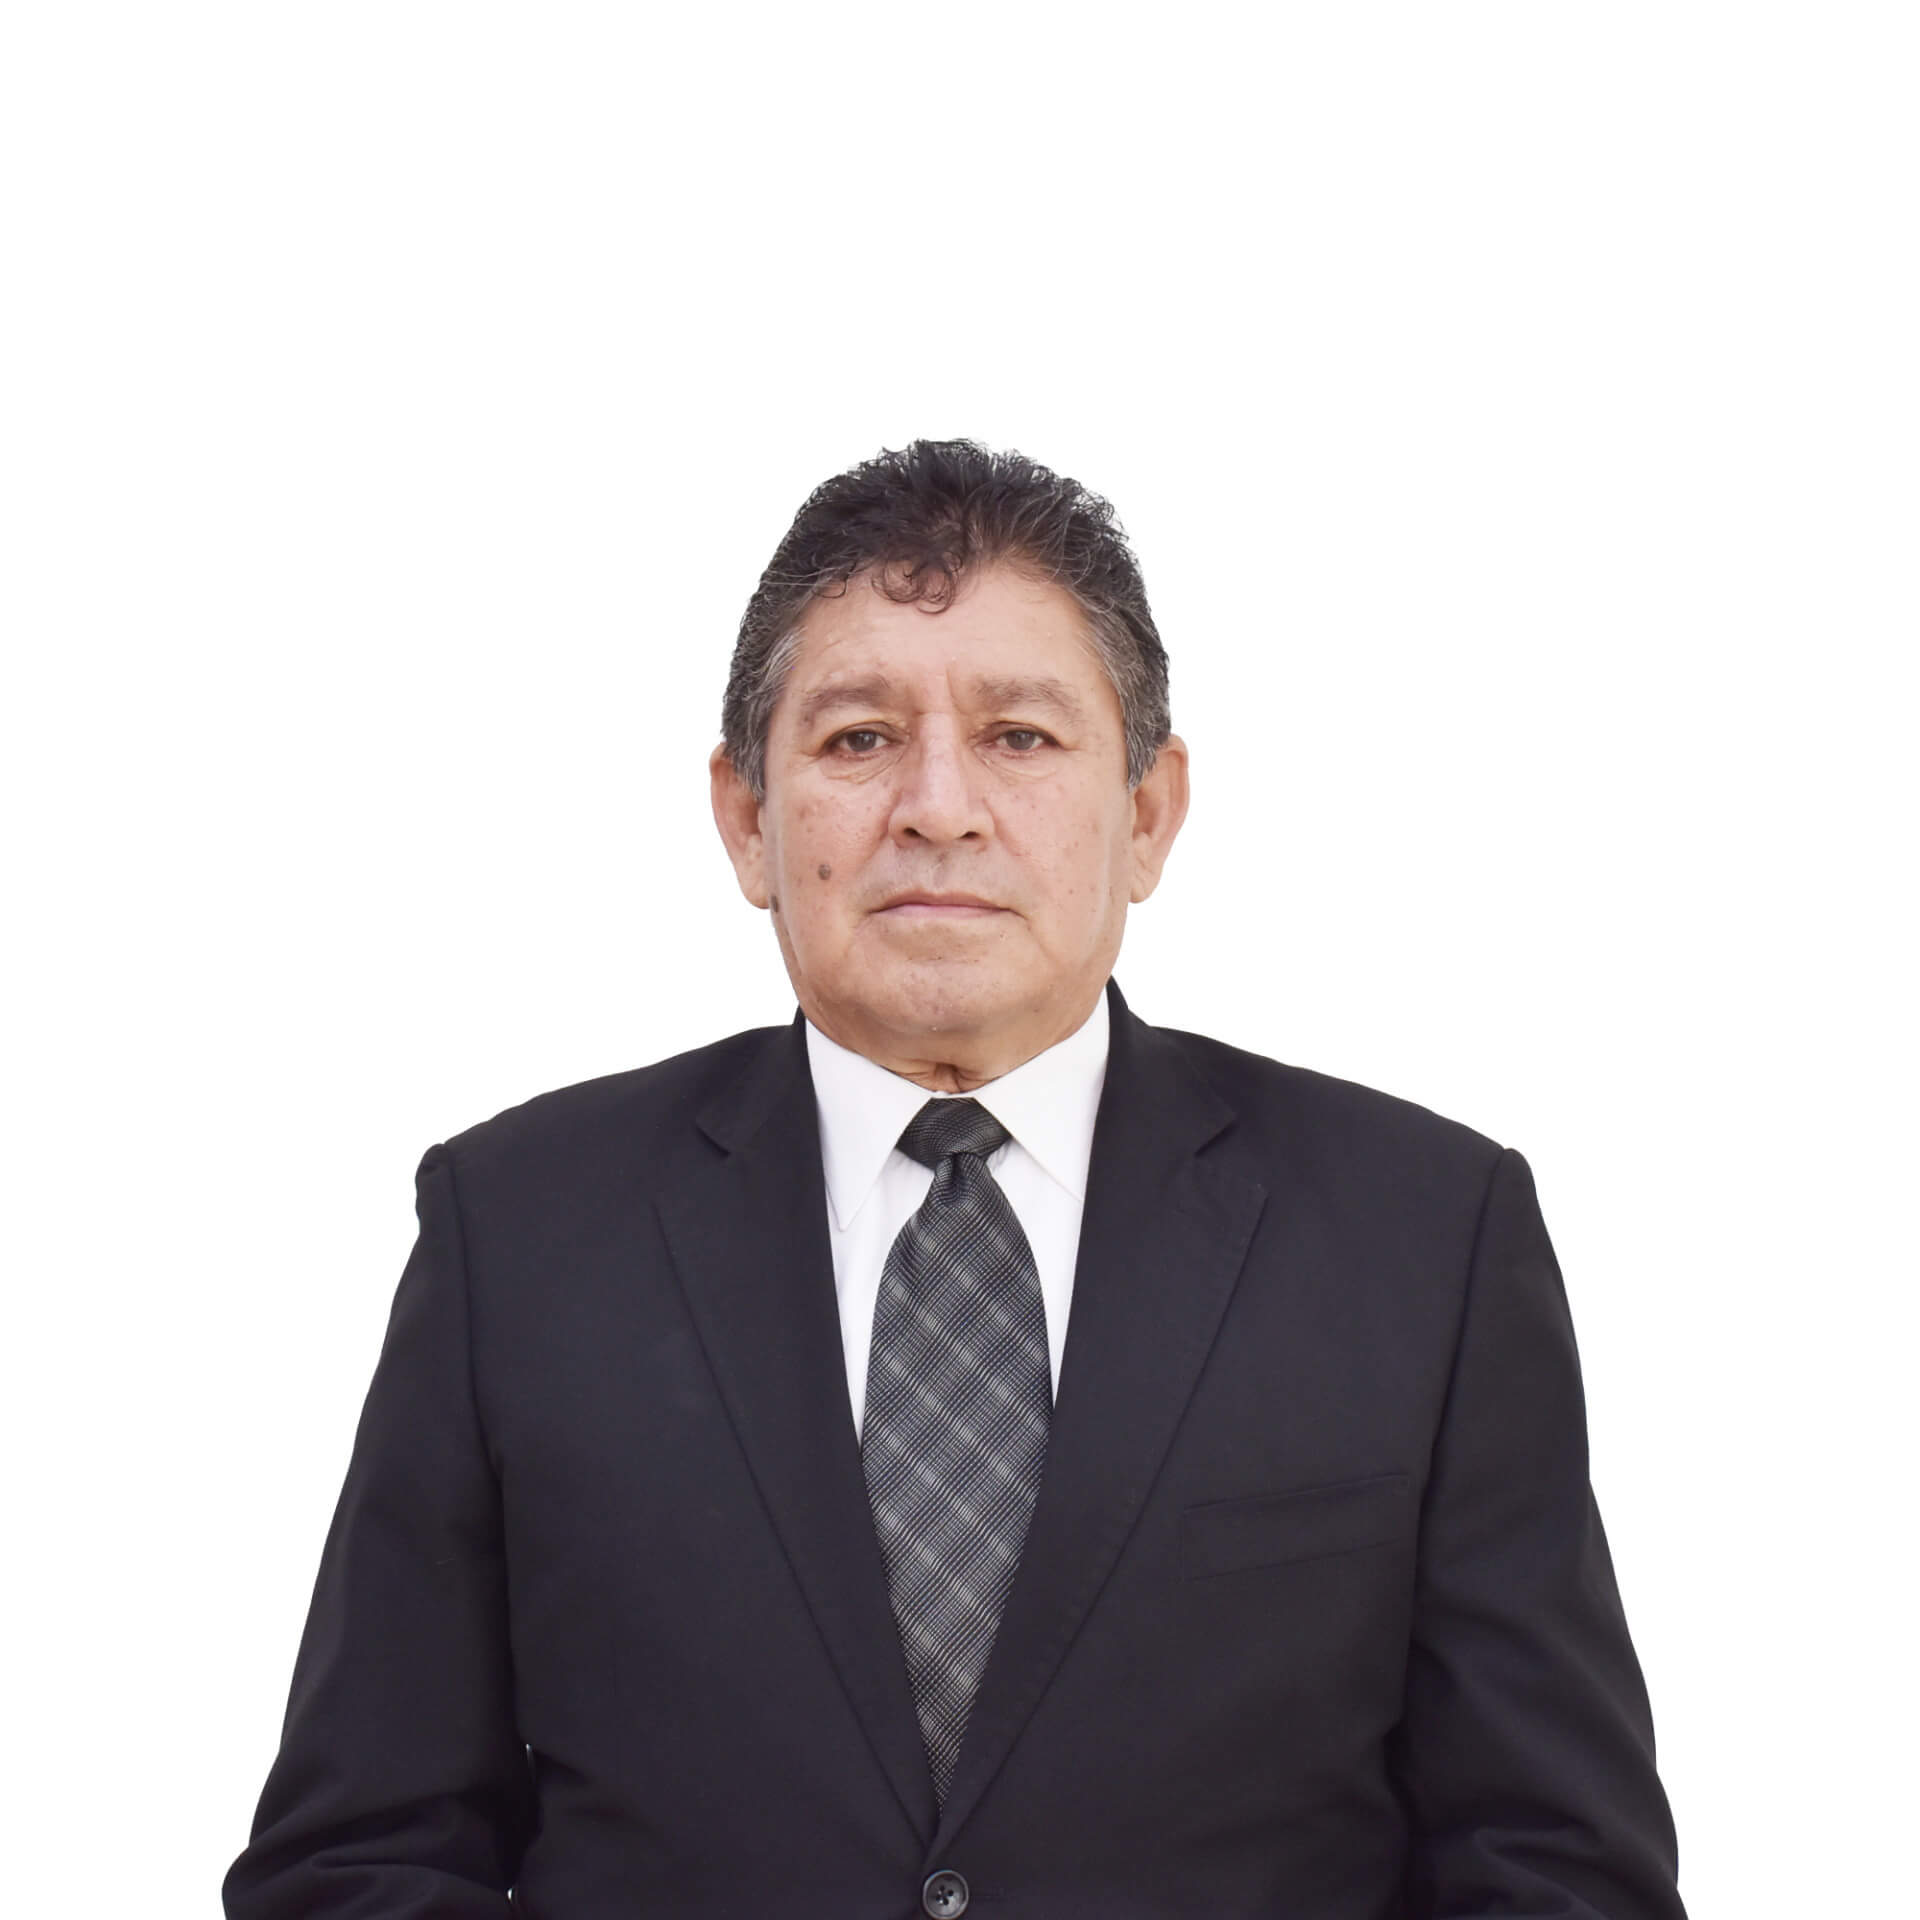 Alfonso Melgar González